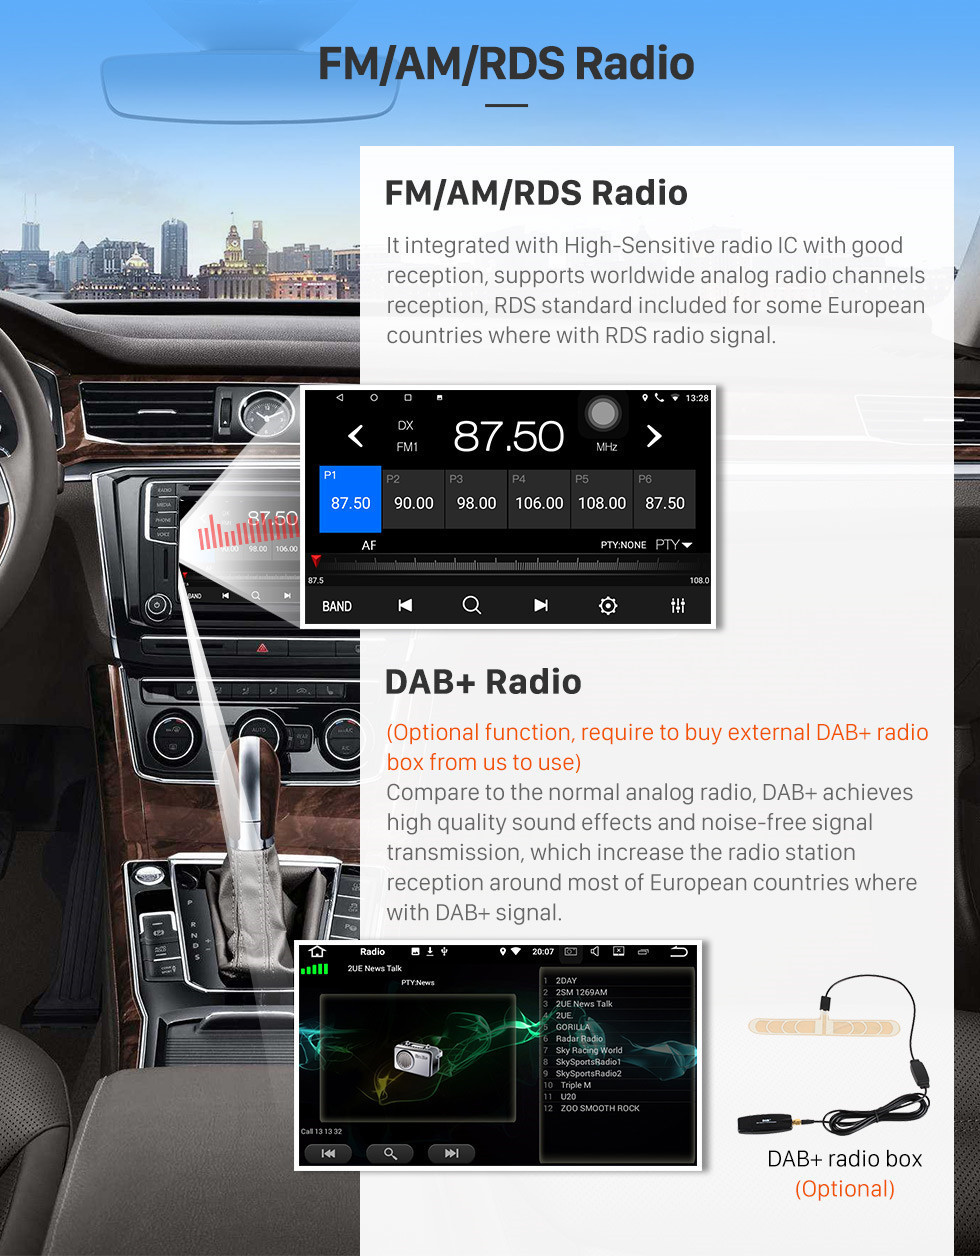 Seicane 2006-2013 Honda CITY HD 1024 * 600 с сенсорным экраном Android 10.0 Радио стерео с GPS навигацией Bluetooth USB WIFI OBD2 1080P Камера заднего вида Зеркальная ссылка